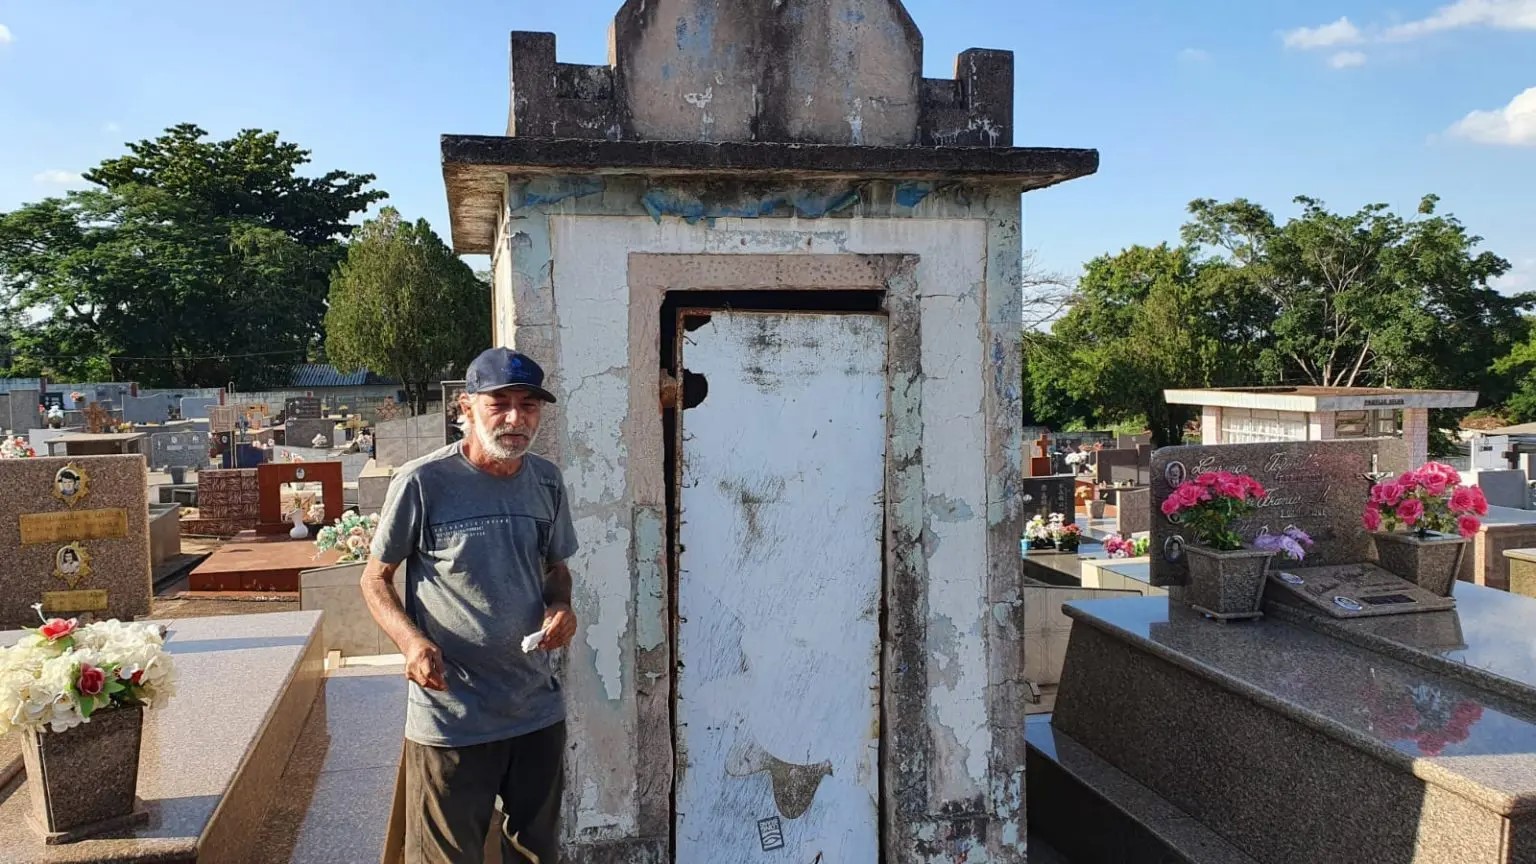 Edson visita a antiga casa e conta detalhes de como foi viver em uma sepultura por 15 anos (Foto: Evandro Mandadori)